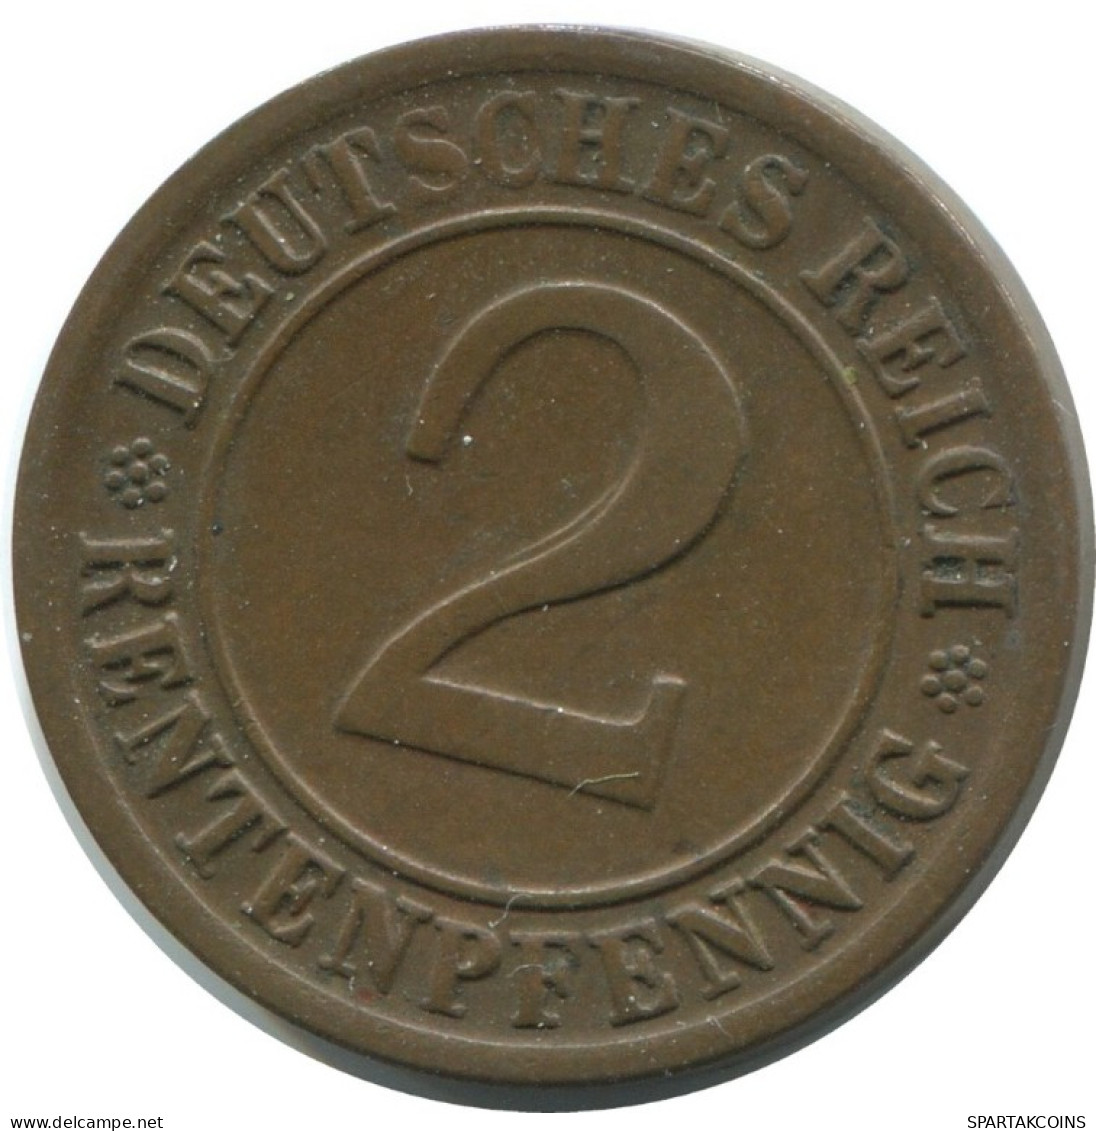 2 RENTENPFENNIG 1924 D GERMANY Coin #AE277.U.A - 2 Renten- & 2 Reichspfennig